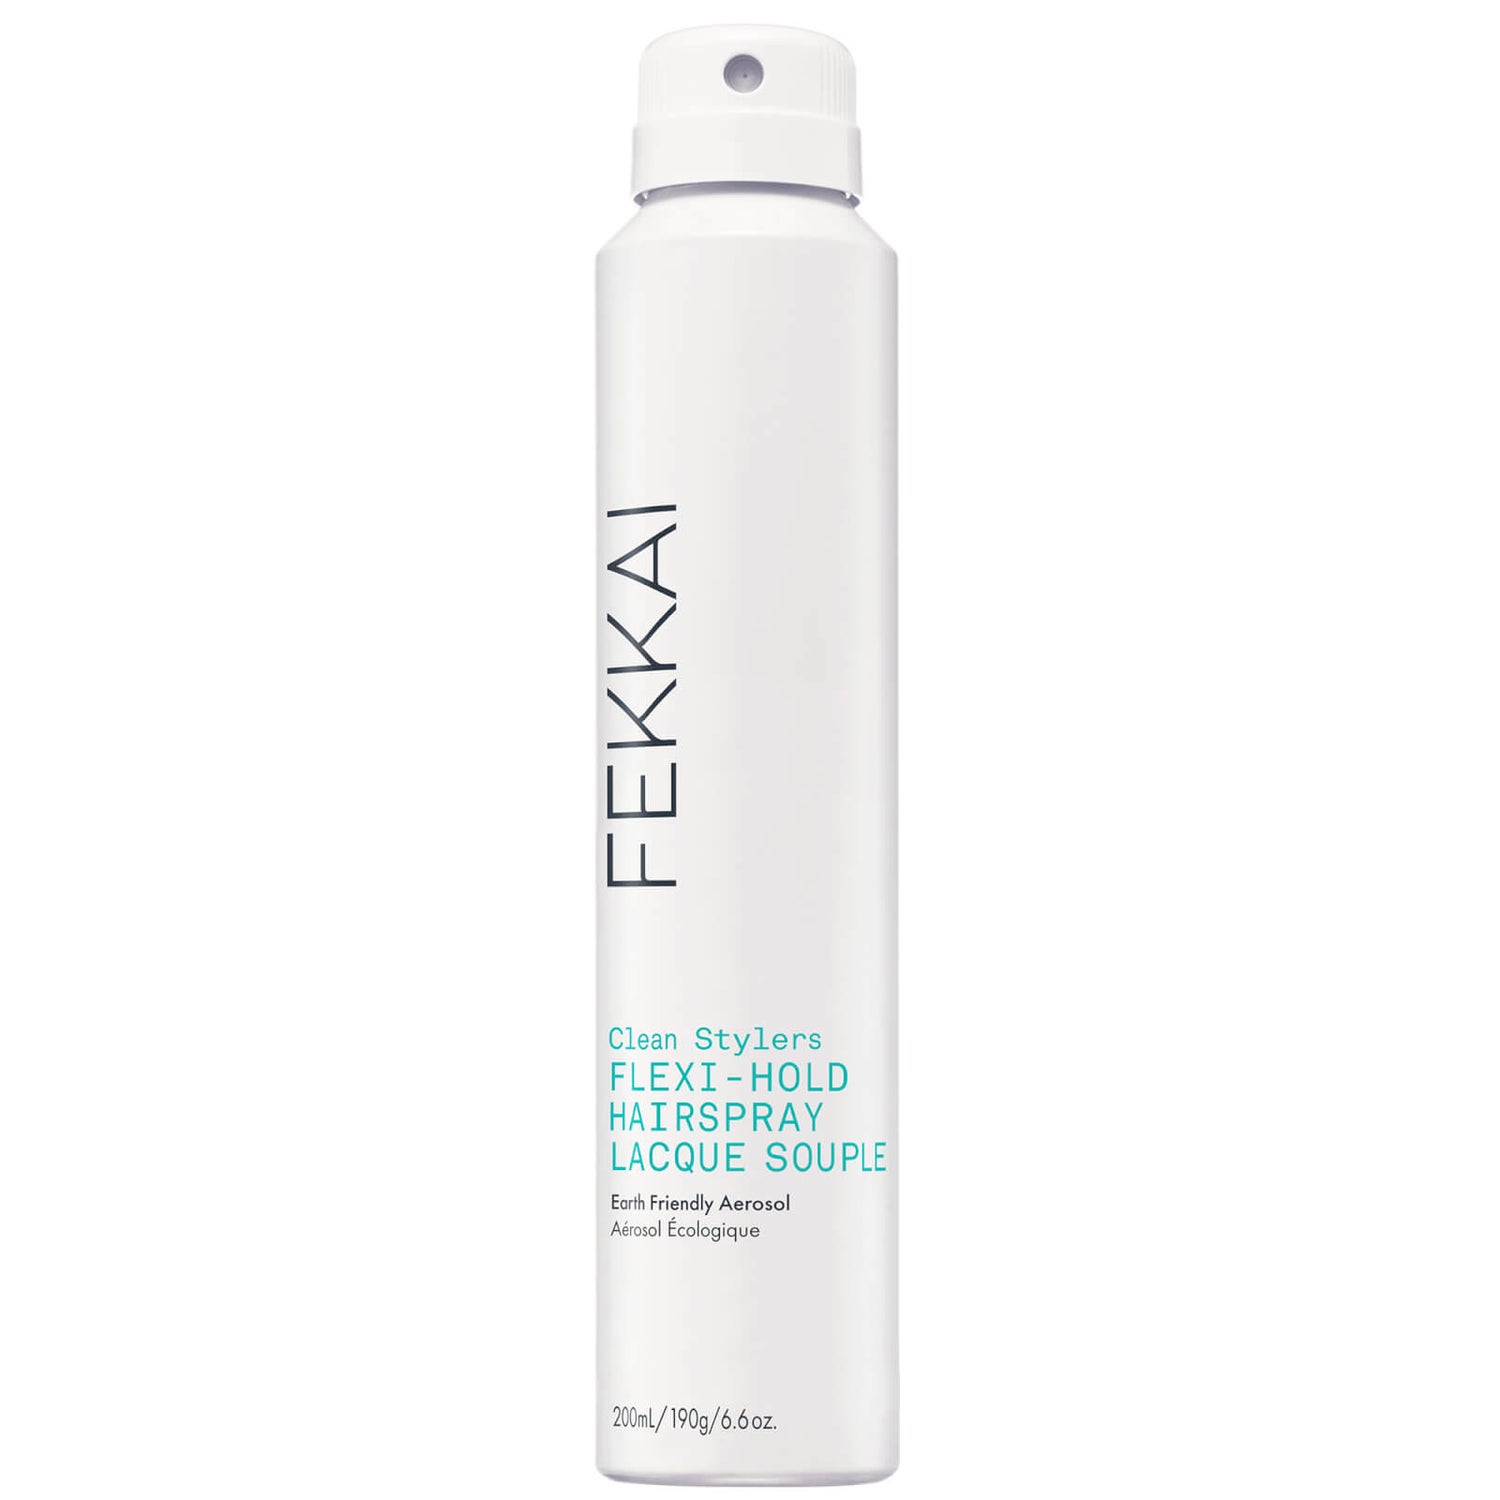 Fekkai Flexi-hold Hairspray 6.6 oz